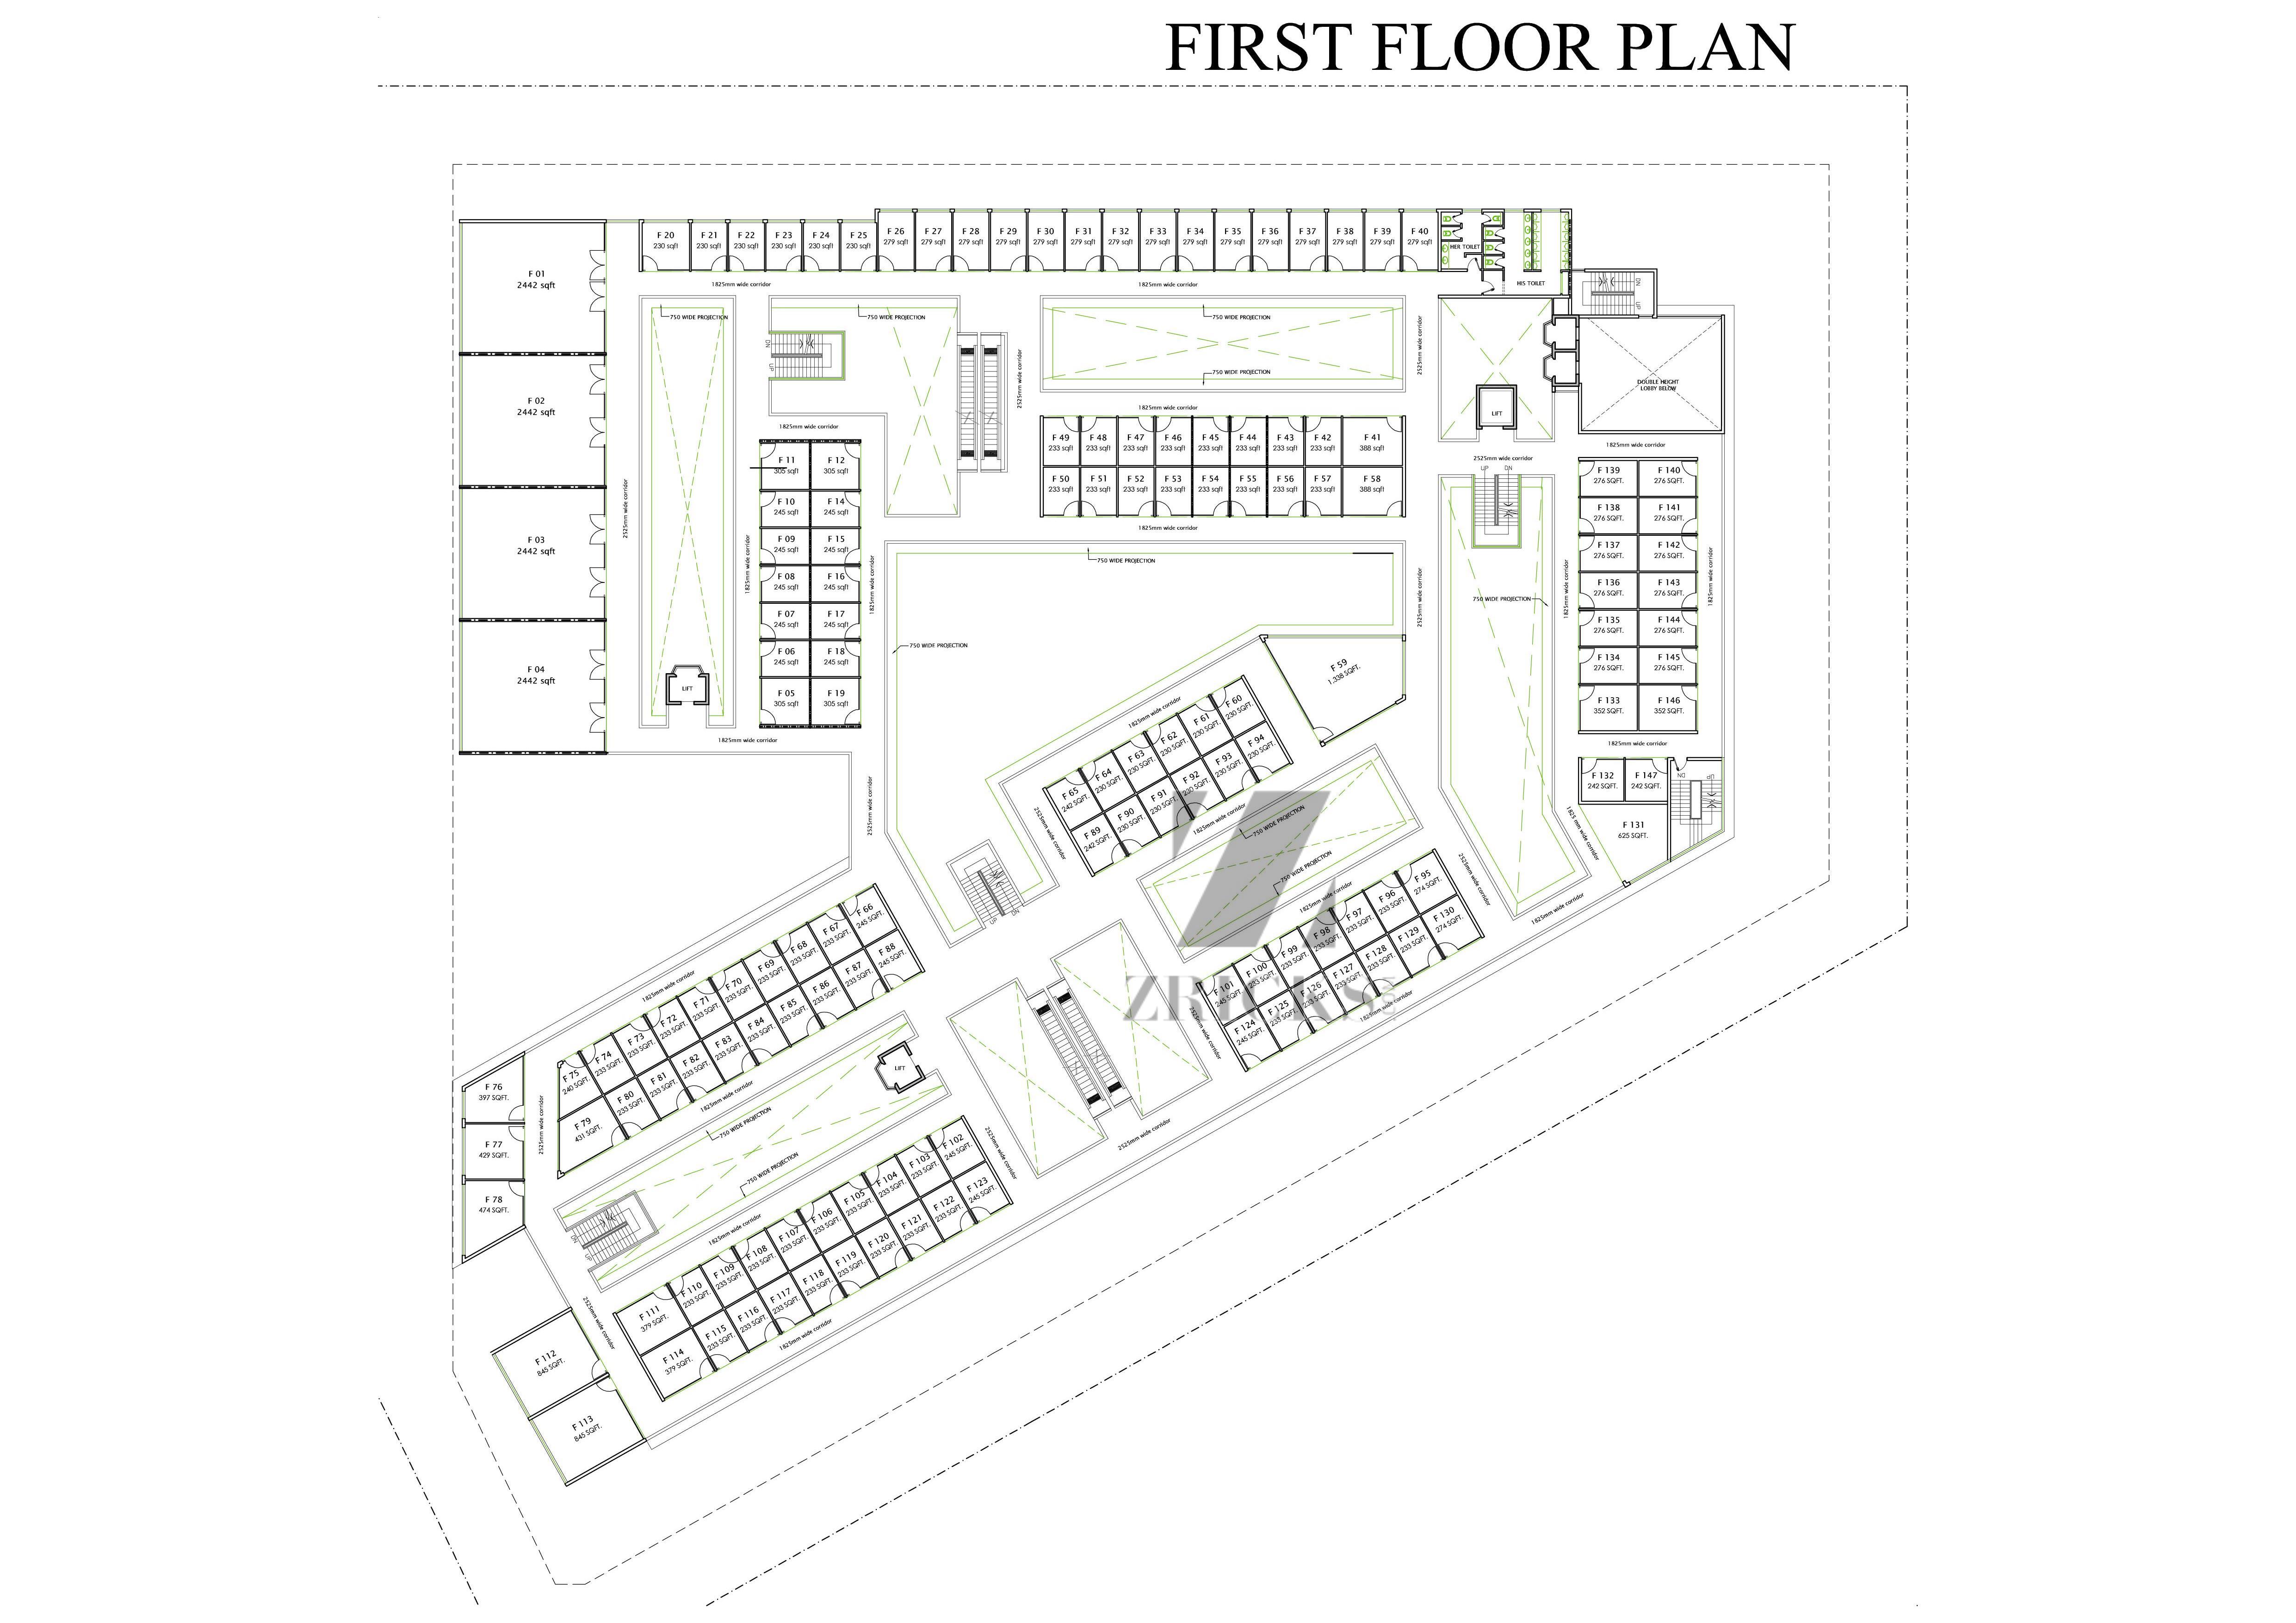 SS Omnia Floor Plan